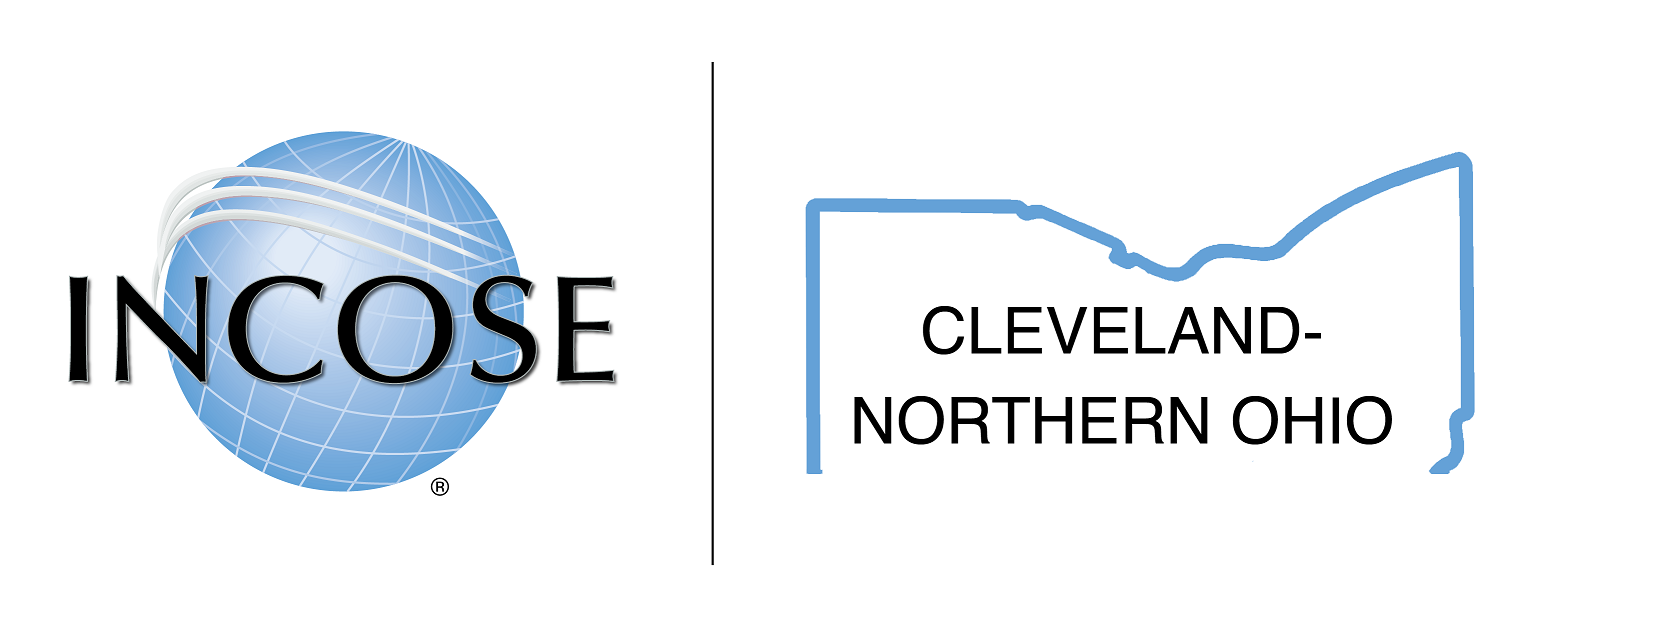 INCOSE Cleveland Northern Ohio Chapter Logo v2-01